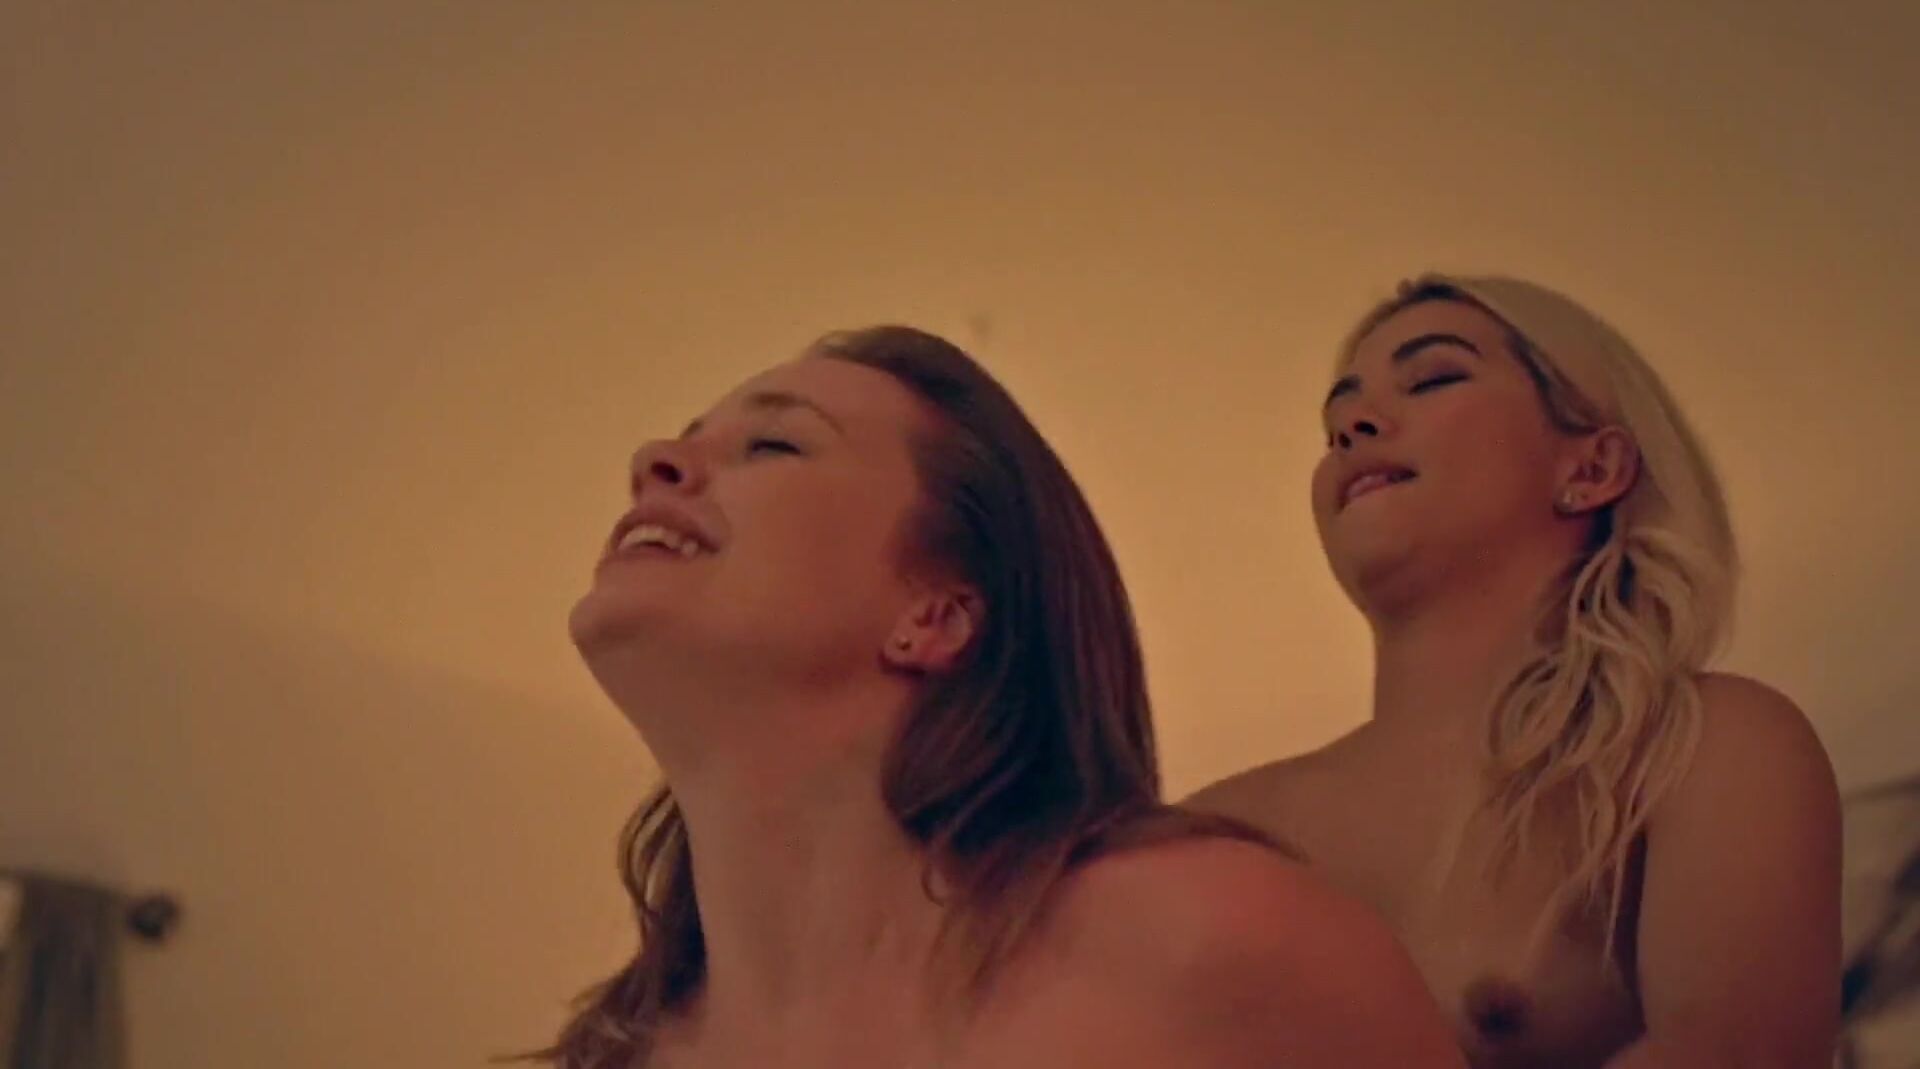 Stripper Steamy girls Tru Collins and Hayley Kiyoko have a threesome in explicit sex scene KindGirls - 1